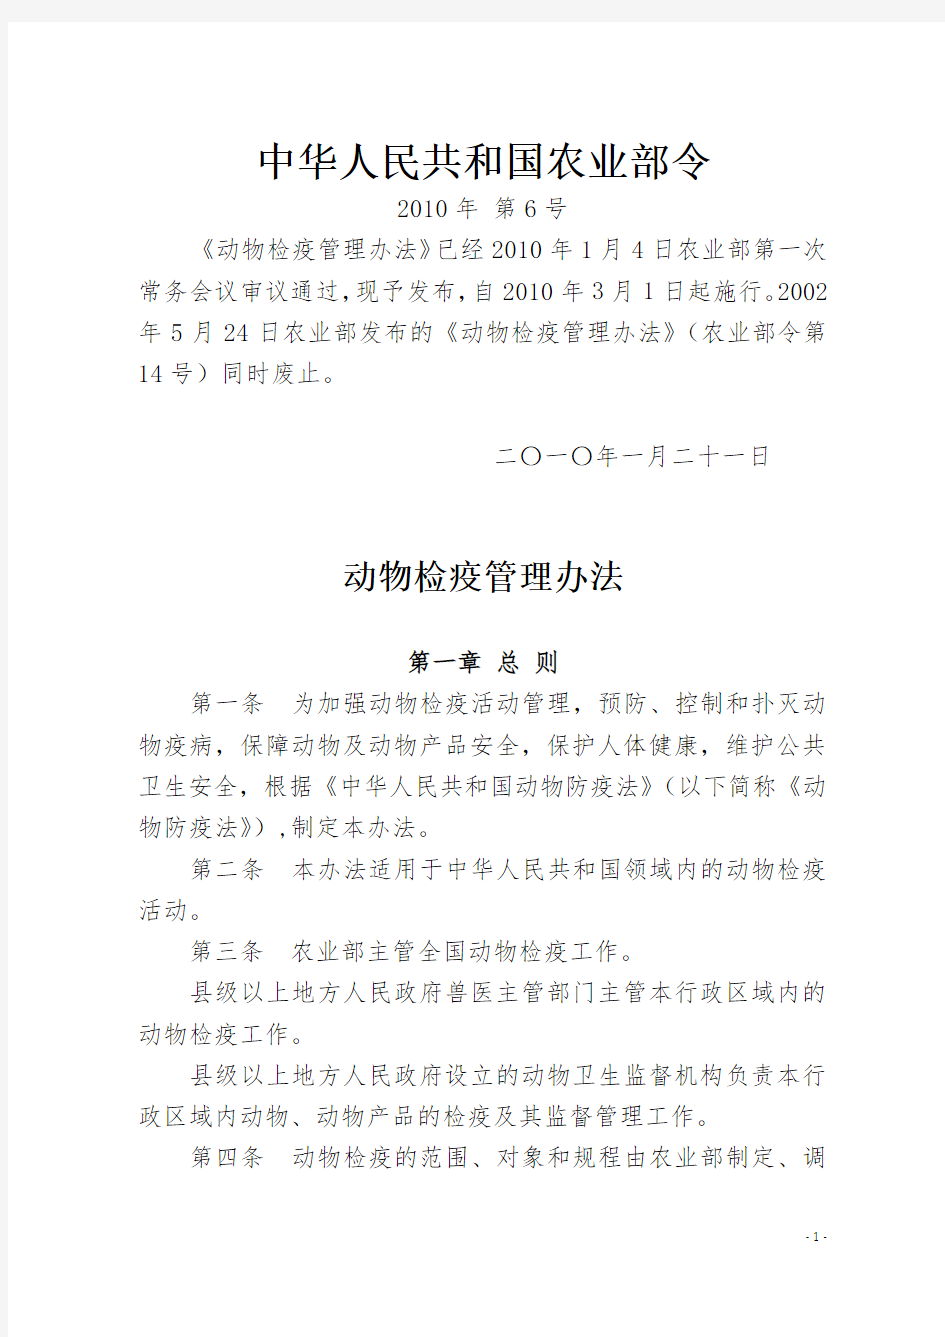 中华人民共和国农业部令6号《动物检疫管理办法》